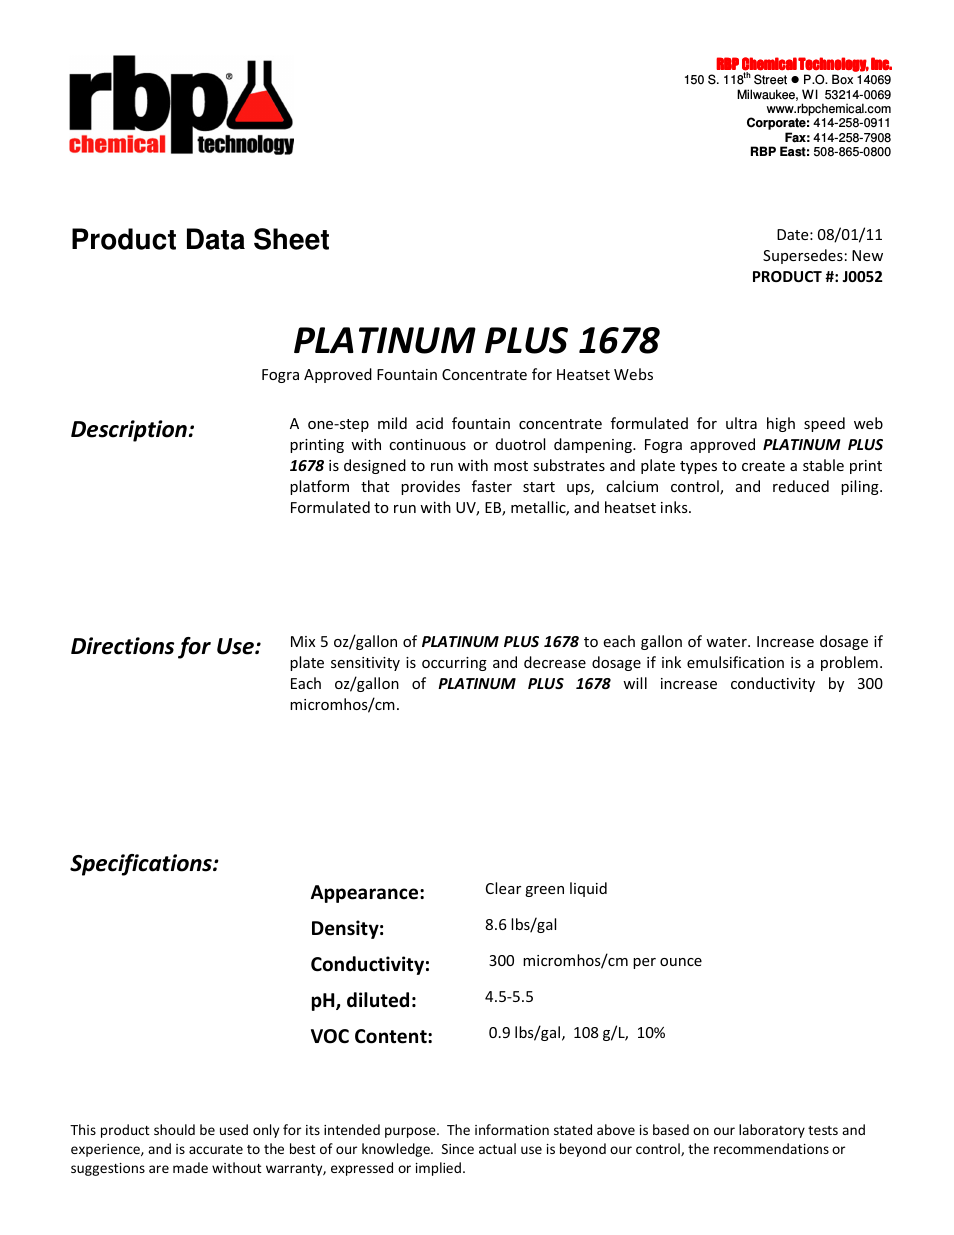 J0052 PLATINUM PLUS 1678